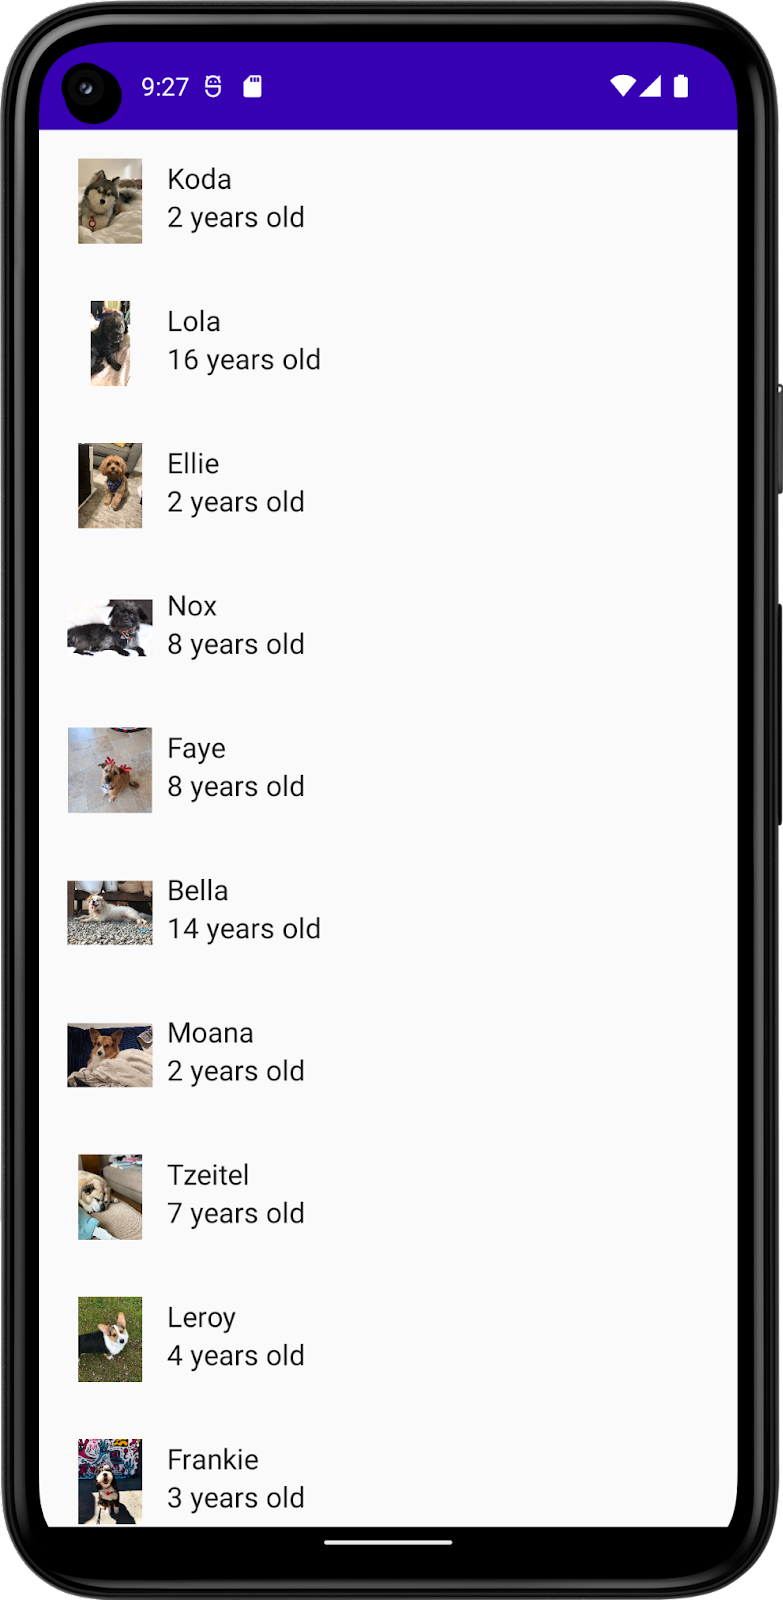 Esta imagem mostra um app com uma lista de cachorros, incluindo os nomes, fotos e idades deles. 